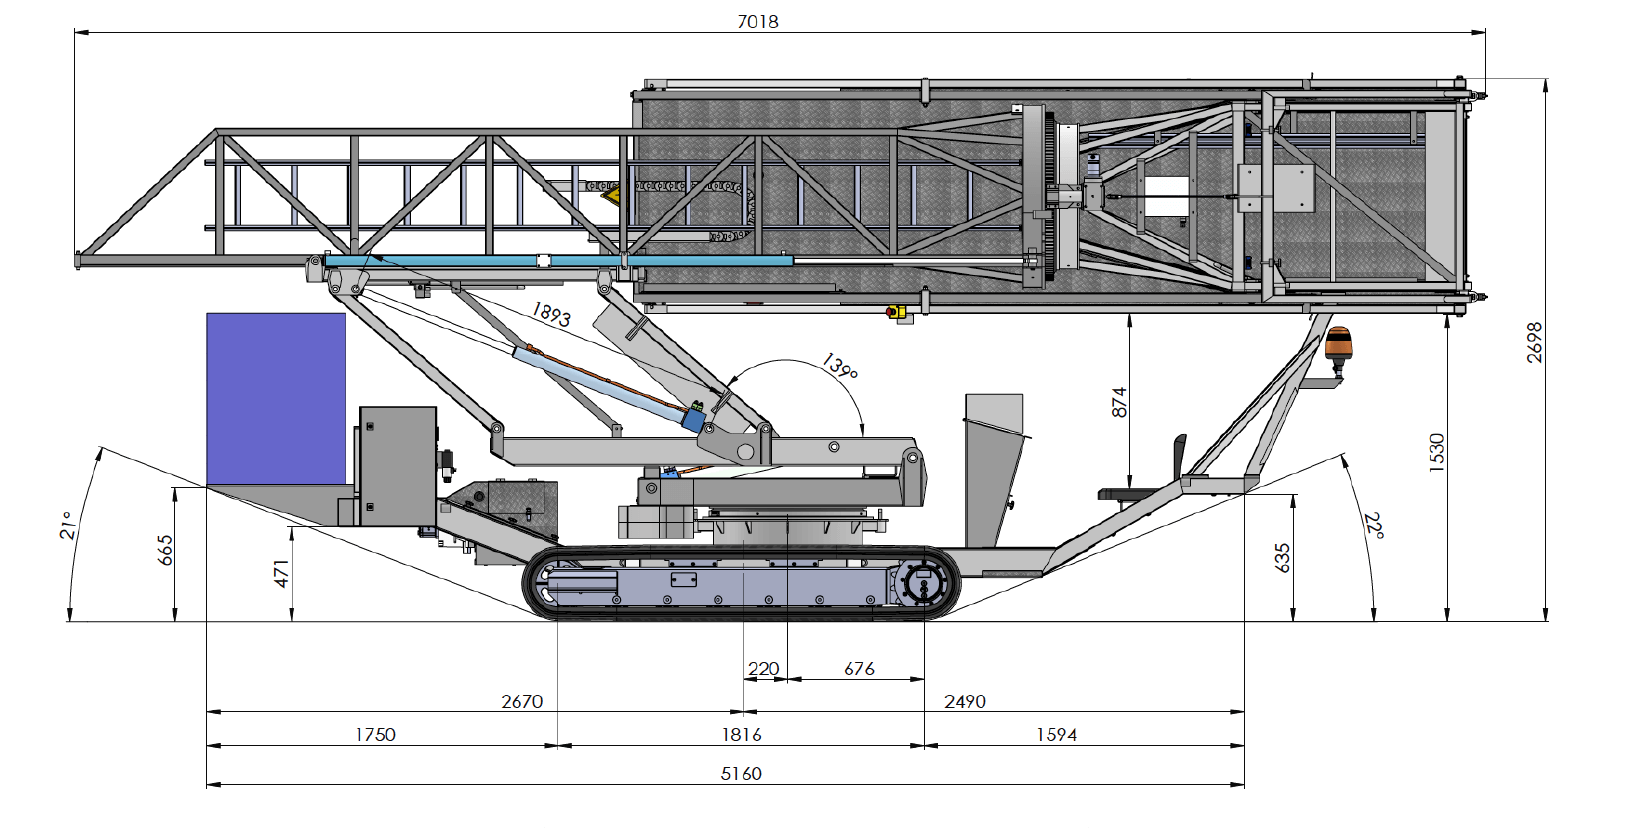 クローラ式橋梁点検機MBI70[MOOG社製]の仕様その2「作業範囲図」